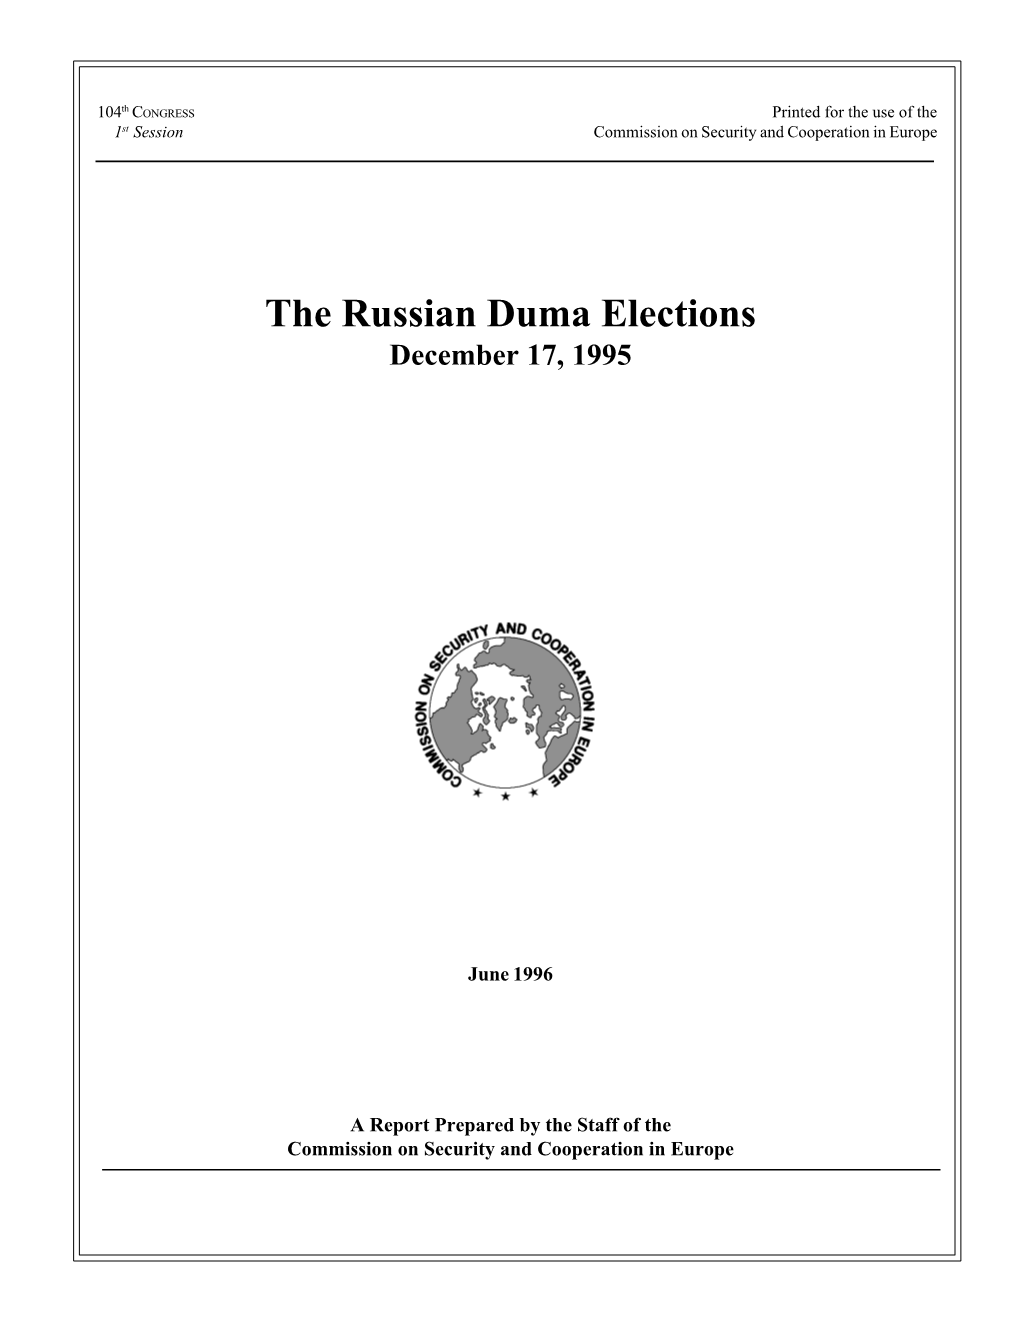 1995 Russian Duma Elections*